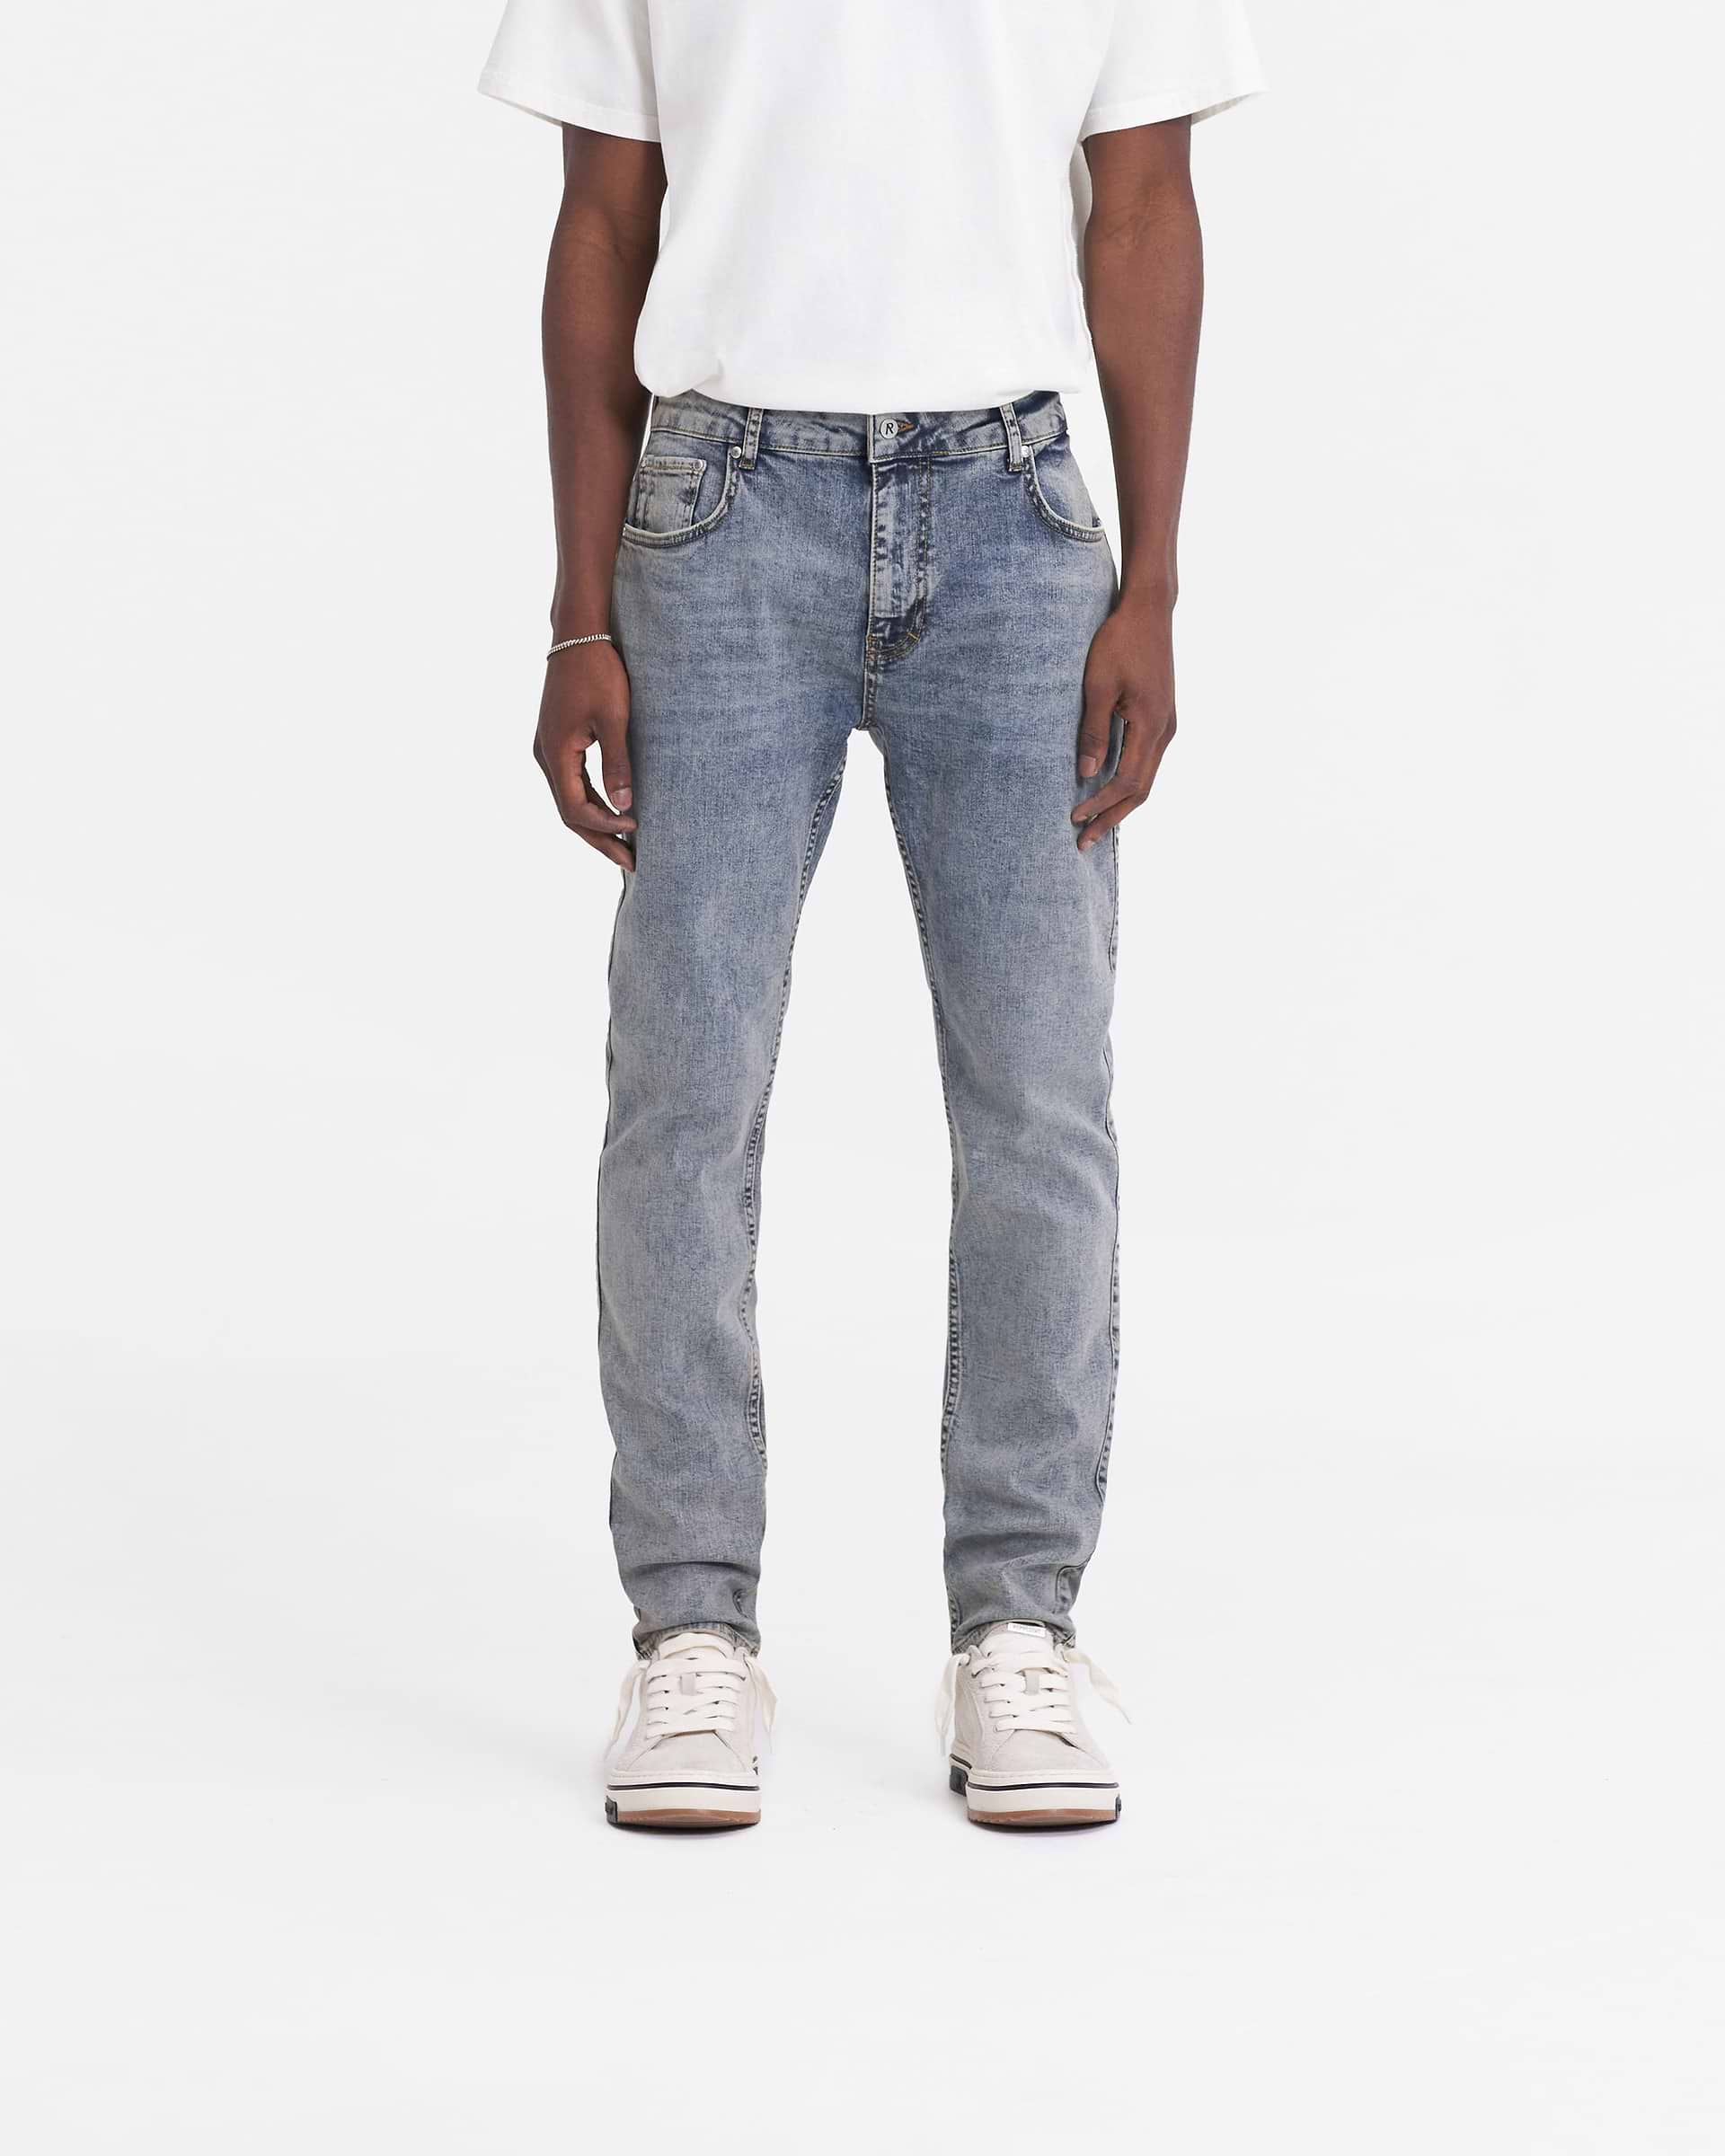 Streetwear Jeans, Men's Denim